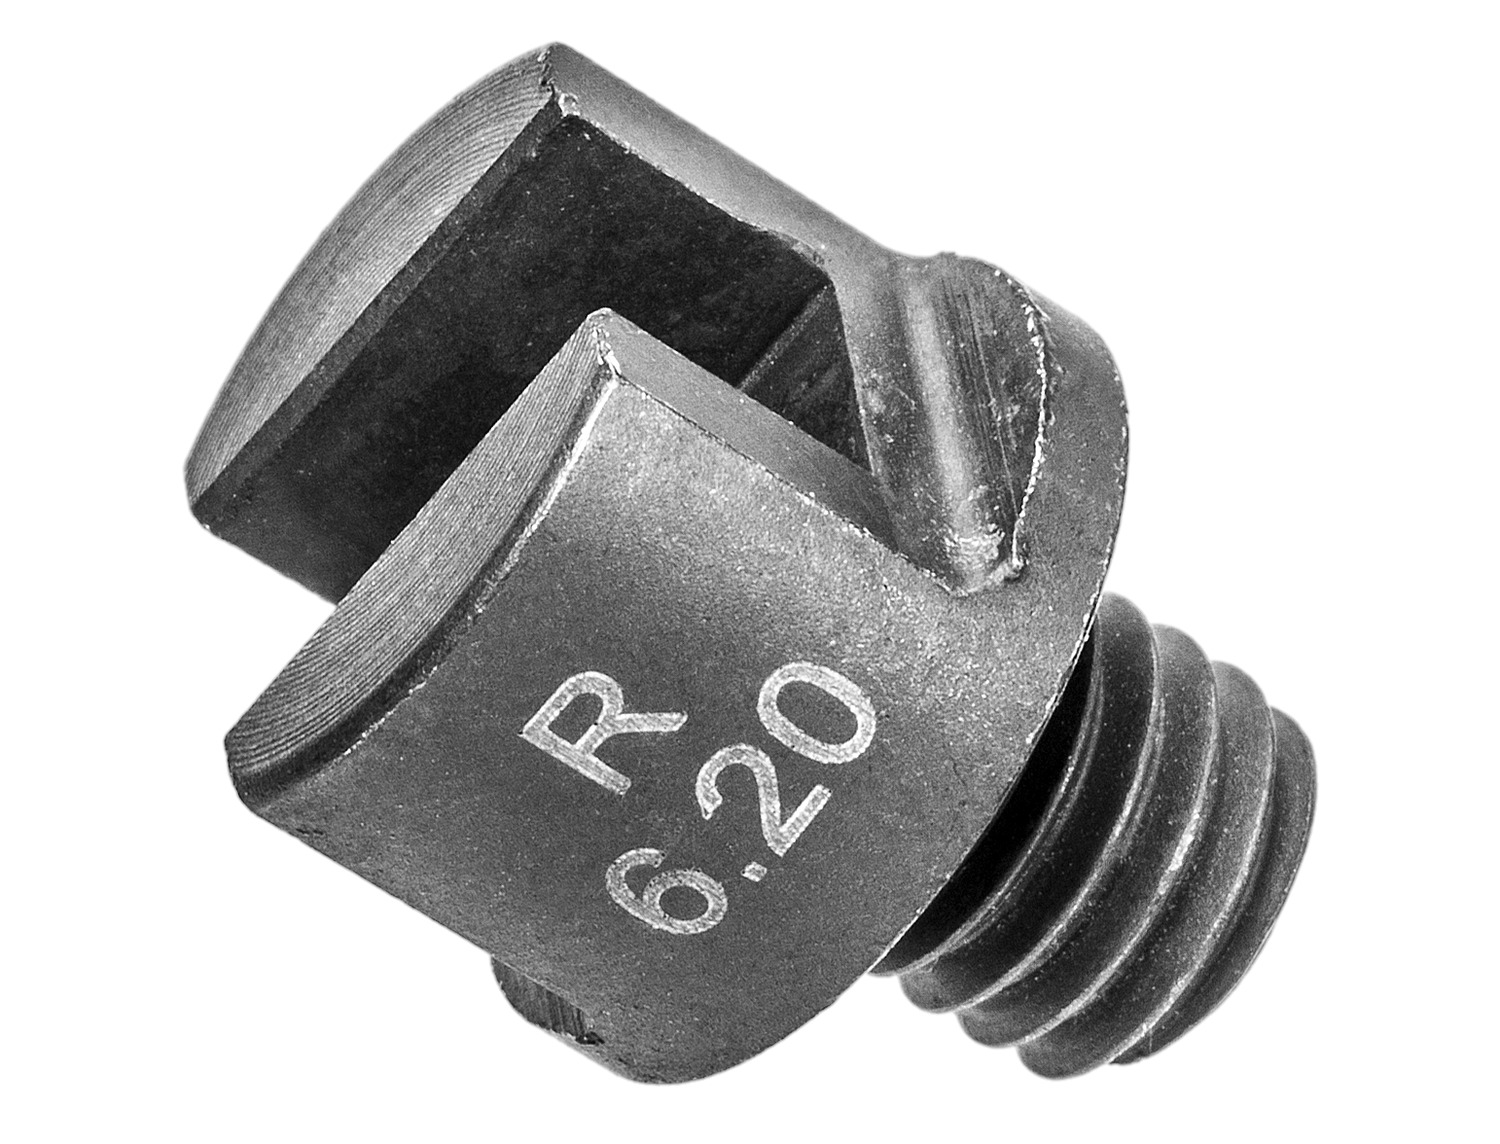 Obrázek produktu ocelový ořech 6,2 mm pro M016-149, BIKESERVICE BS5502R